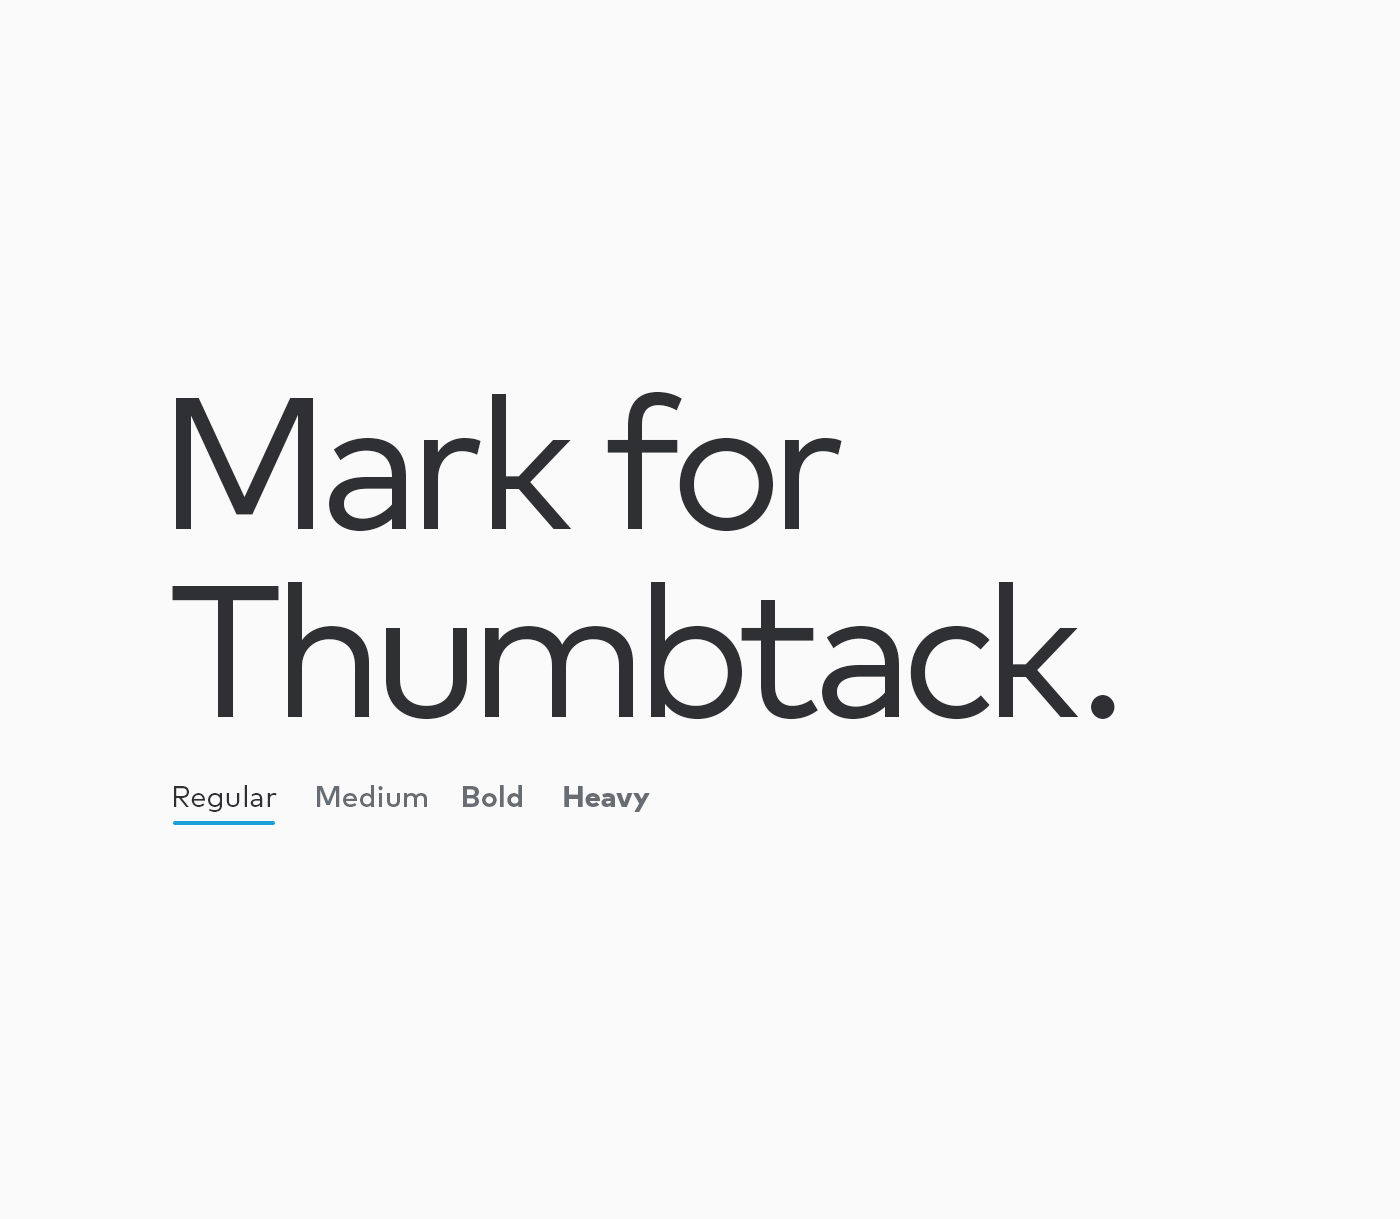 Mark-For-Thumbtack_Regular.png